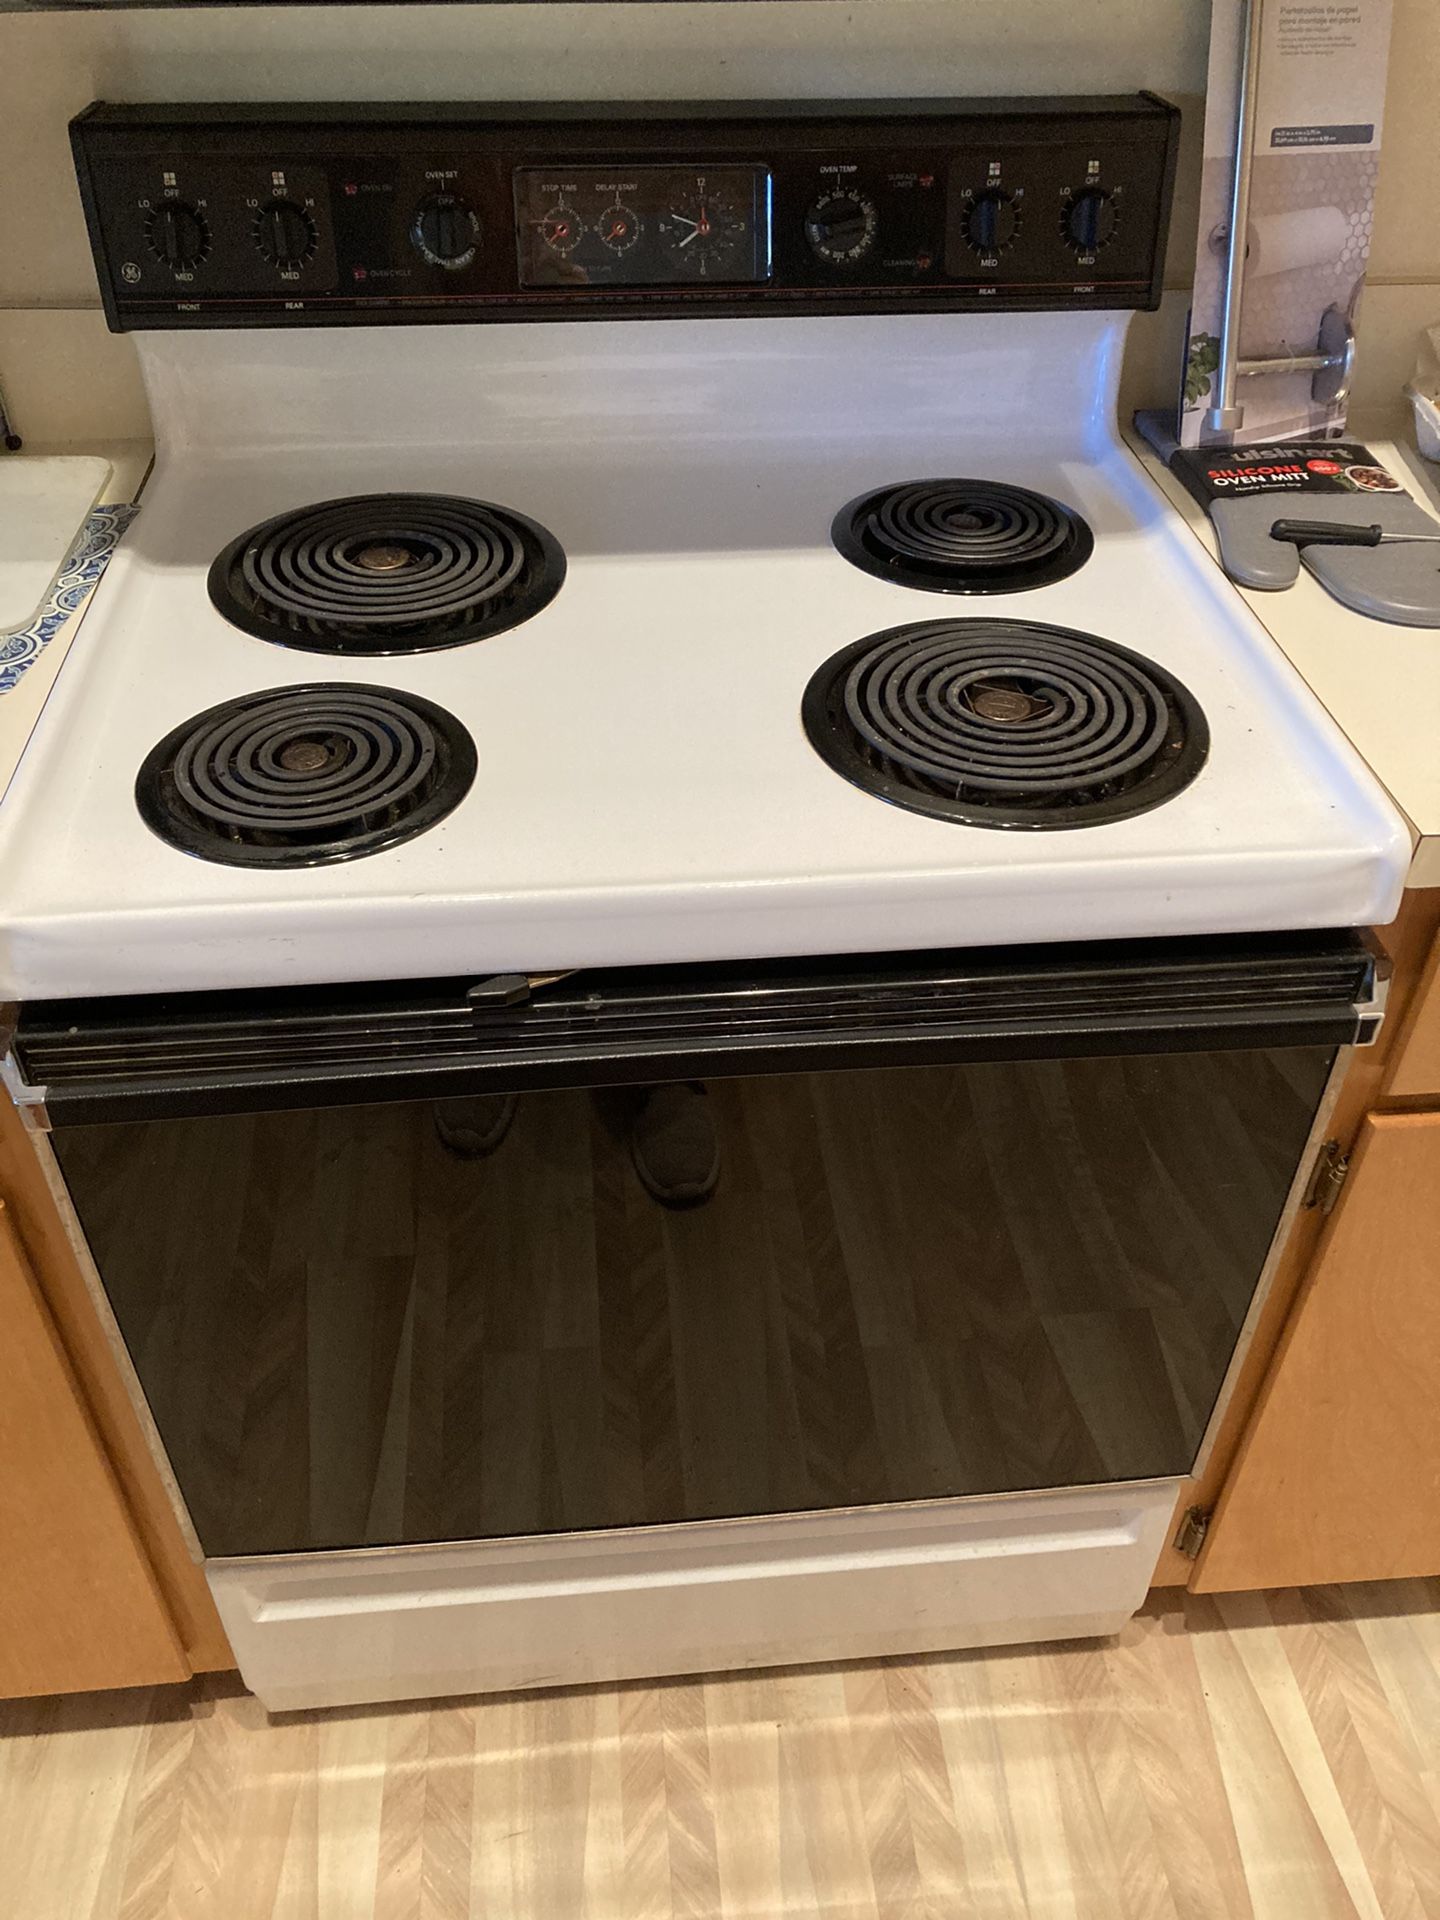 Dishwasher and stove oven